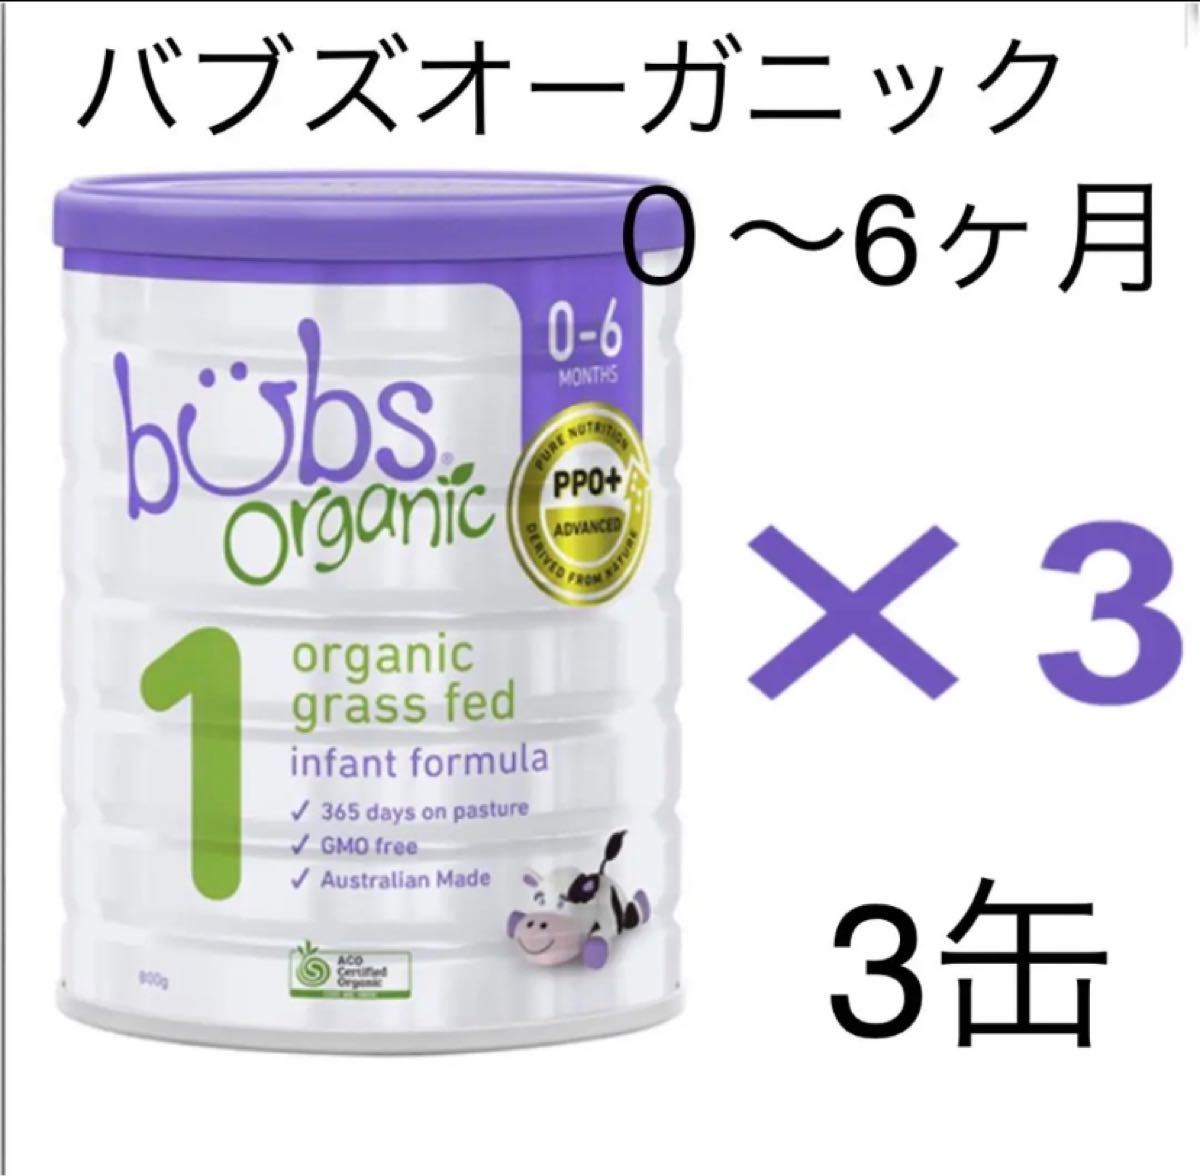 4缶)Bubs Organicバブズオーガニック粉ミルクS2-mydeen出品